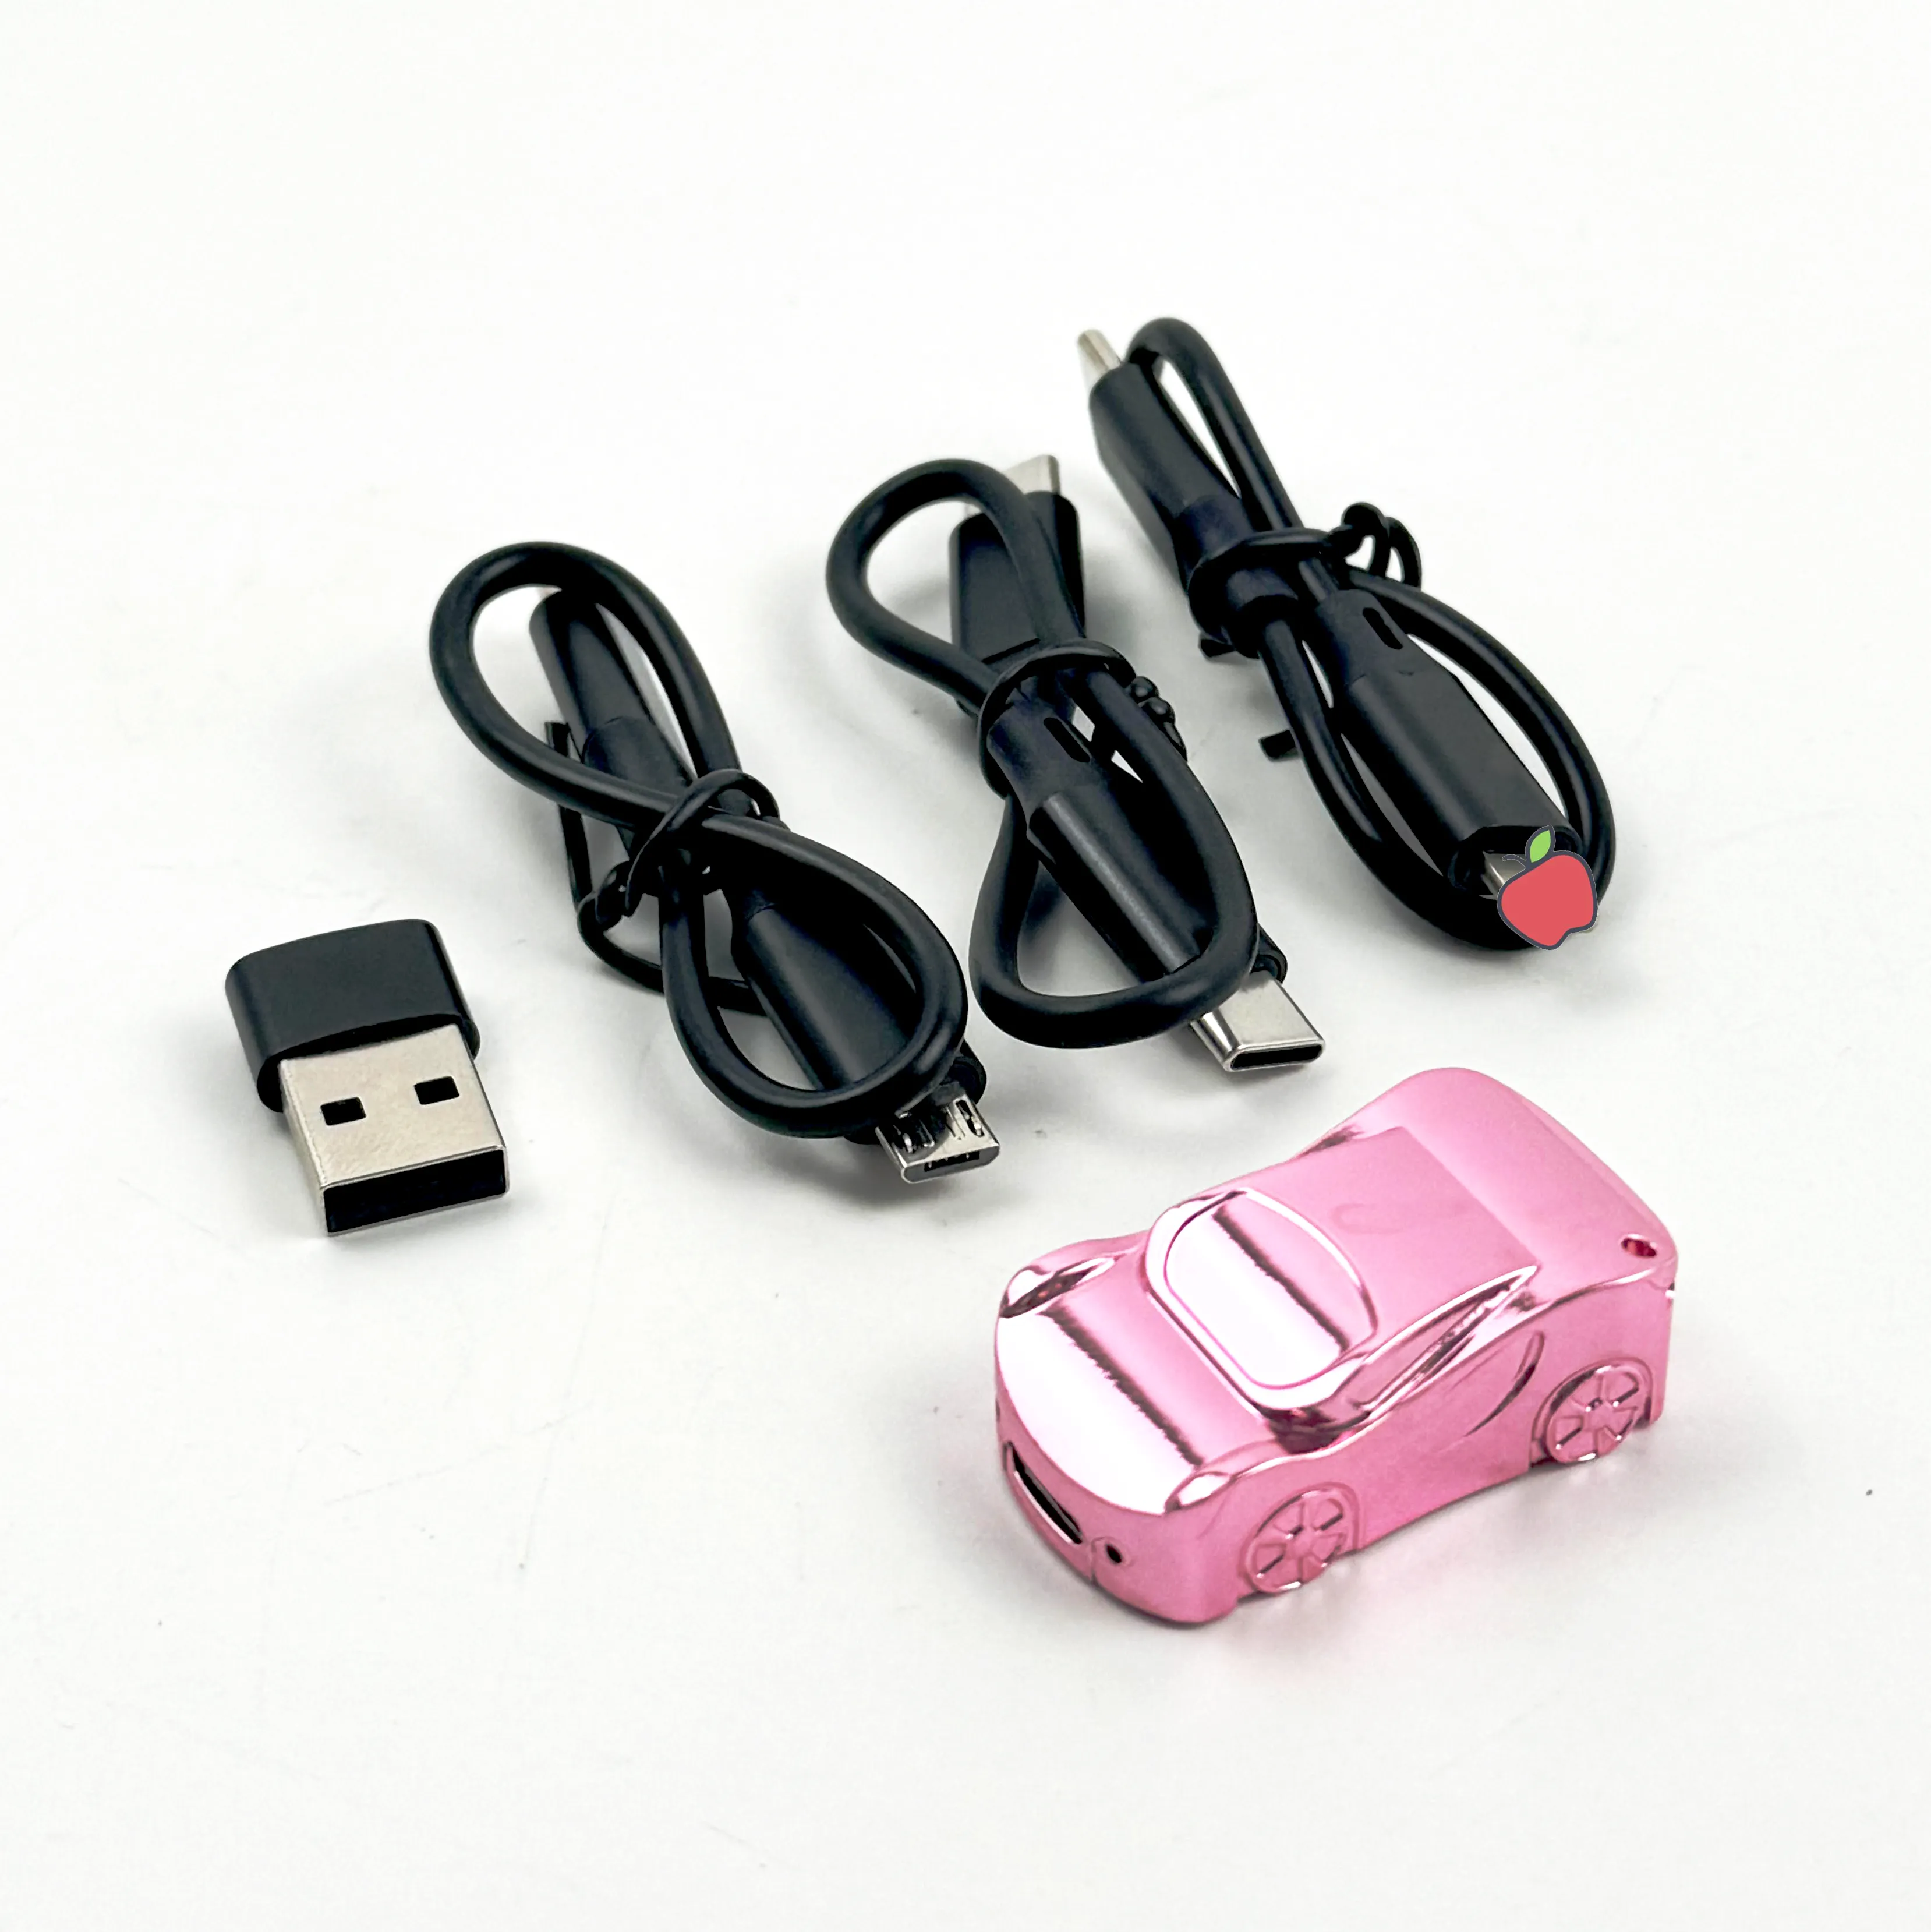 Konverter OTG USB 3 dalam 1, pembaca kartu SD/TF, colok dan mainkan untuk iPhone mobil model otg untuk ponsel komputer